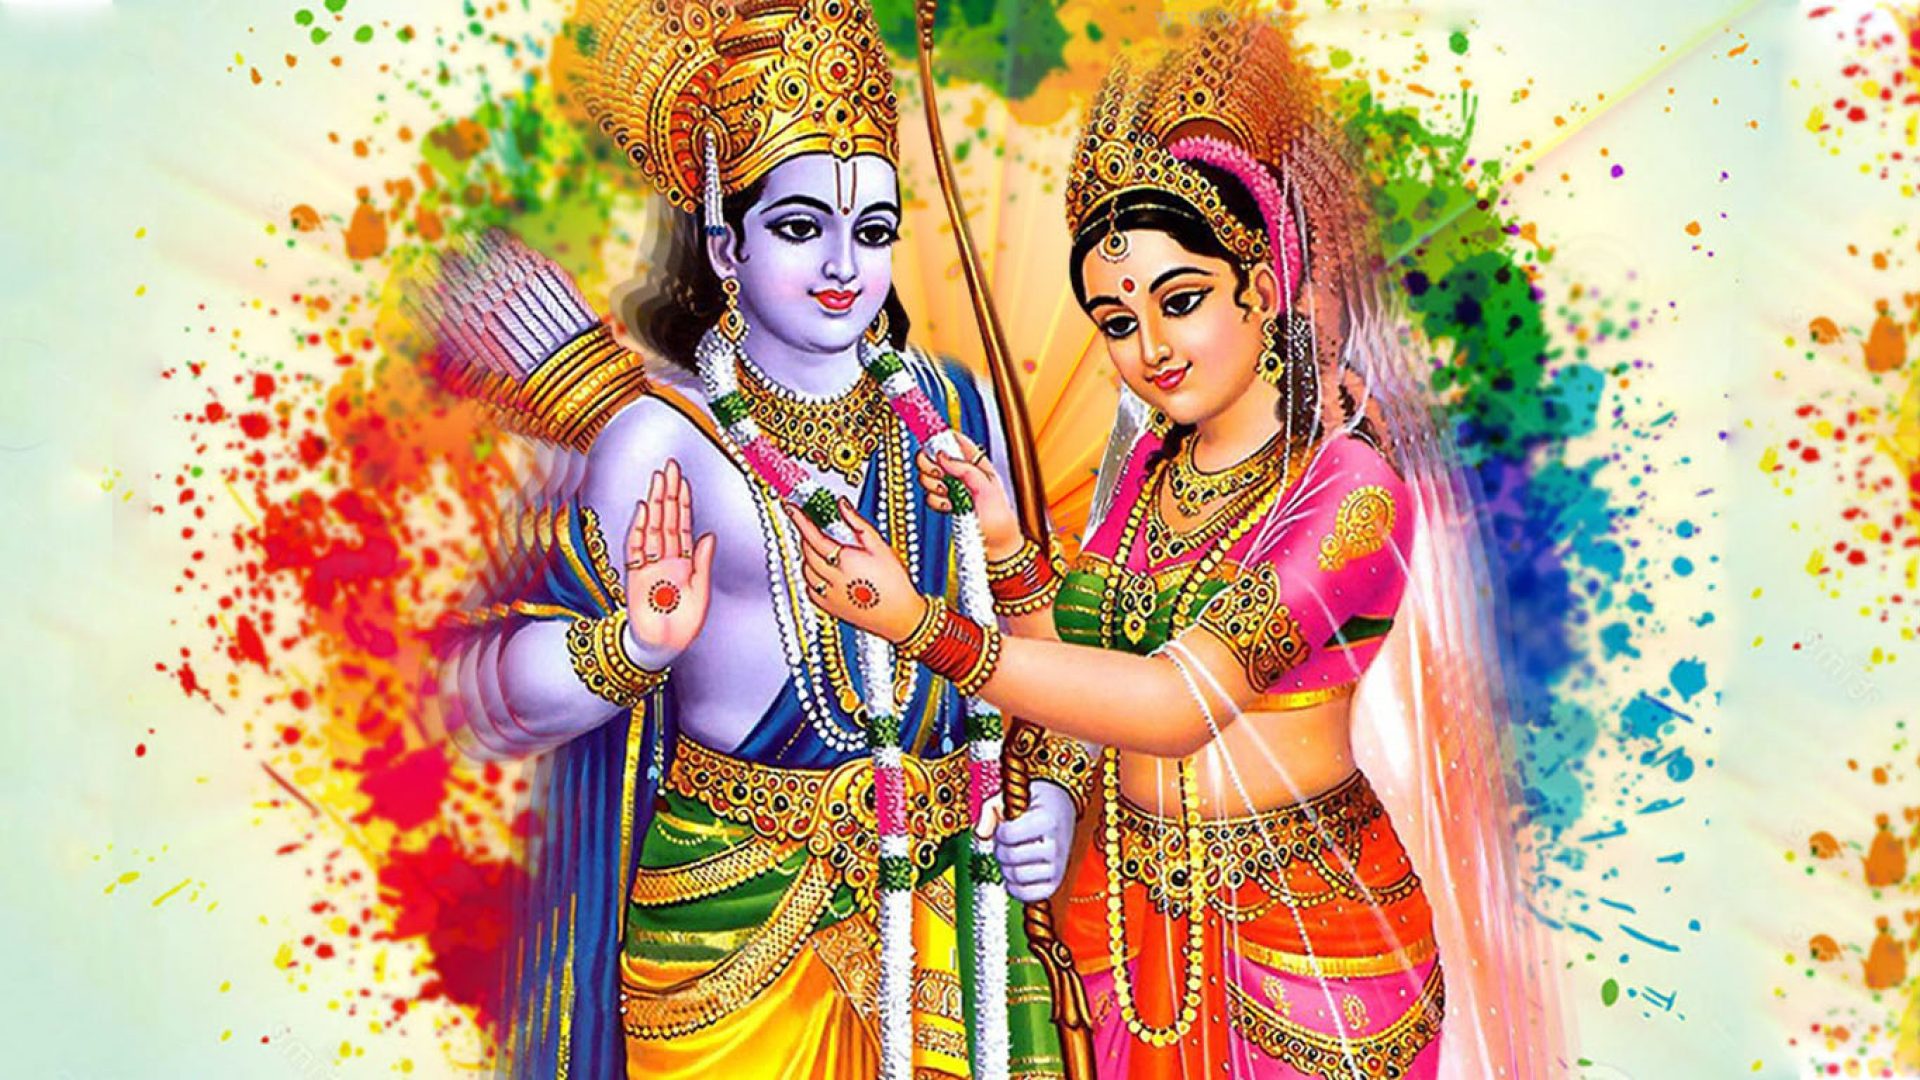 भगवान राम सीताको दर्शन गरि साउन ३१ गते शनिवार (आज) को राशिफल हेनुहोस्